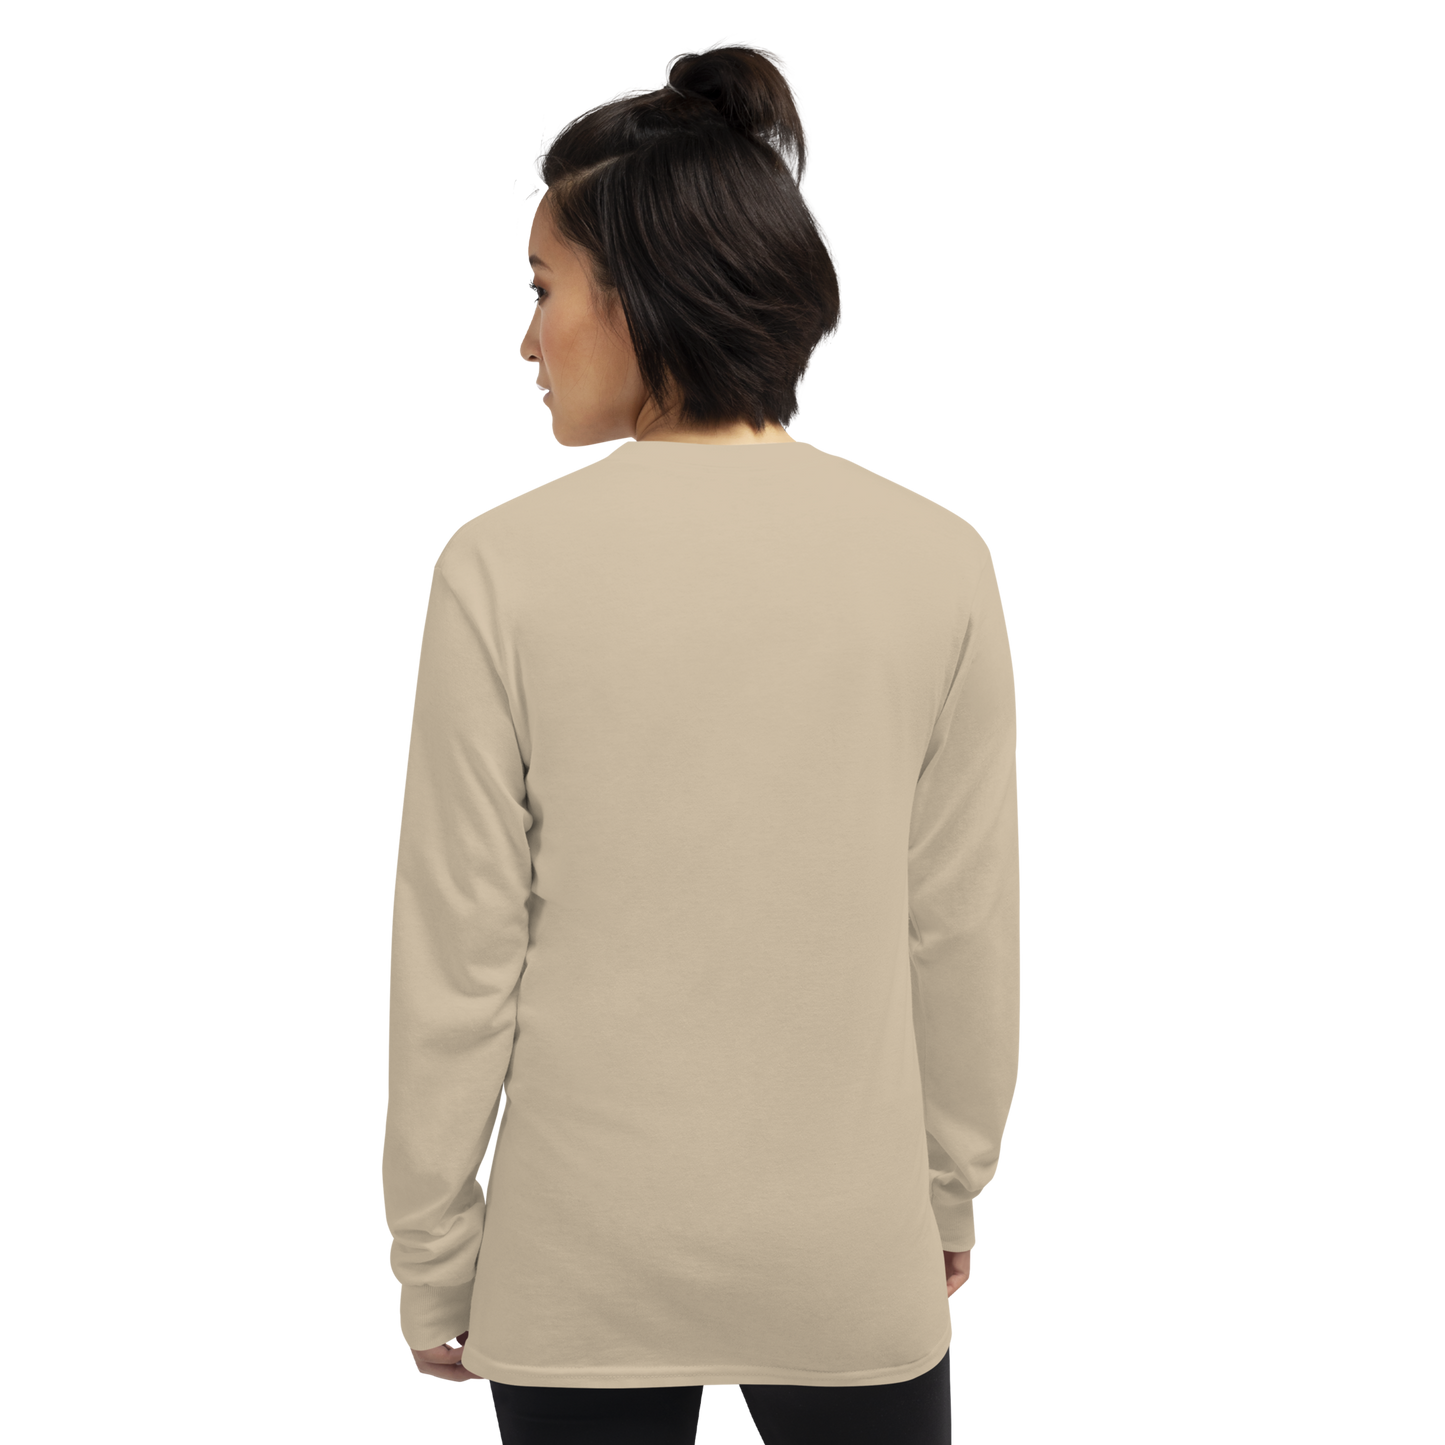 Long Sleeve Shirt - Discreet V1.0 - Sand - Premium